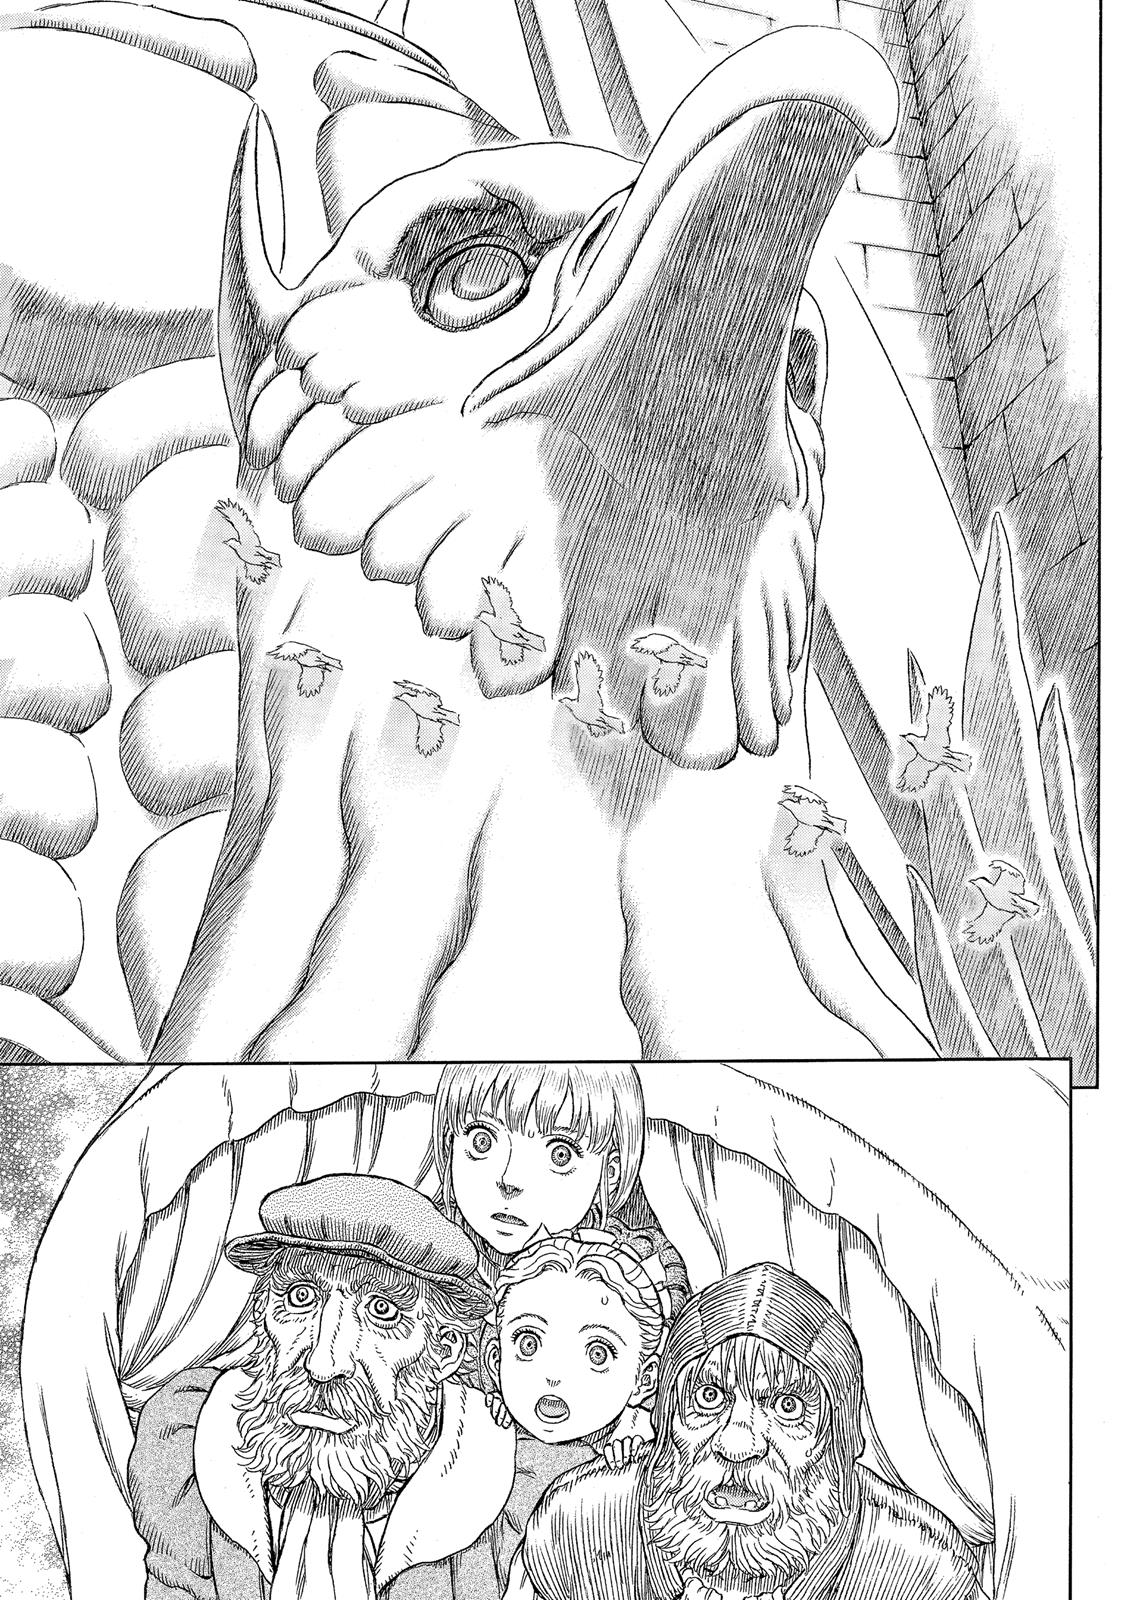 Berserk Manga Chapter 334 image 12